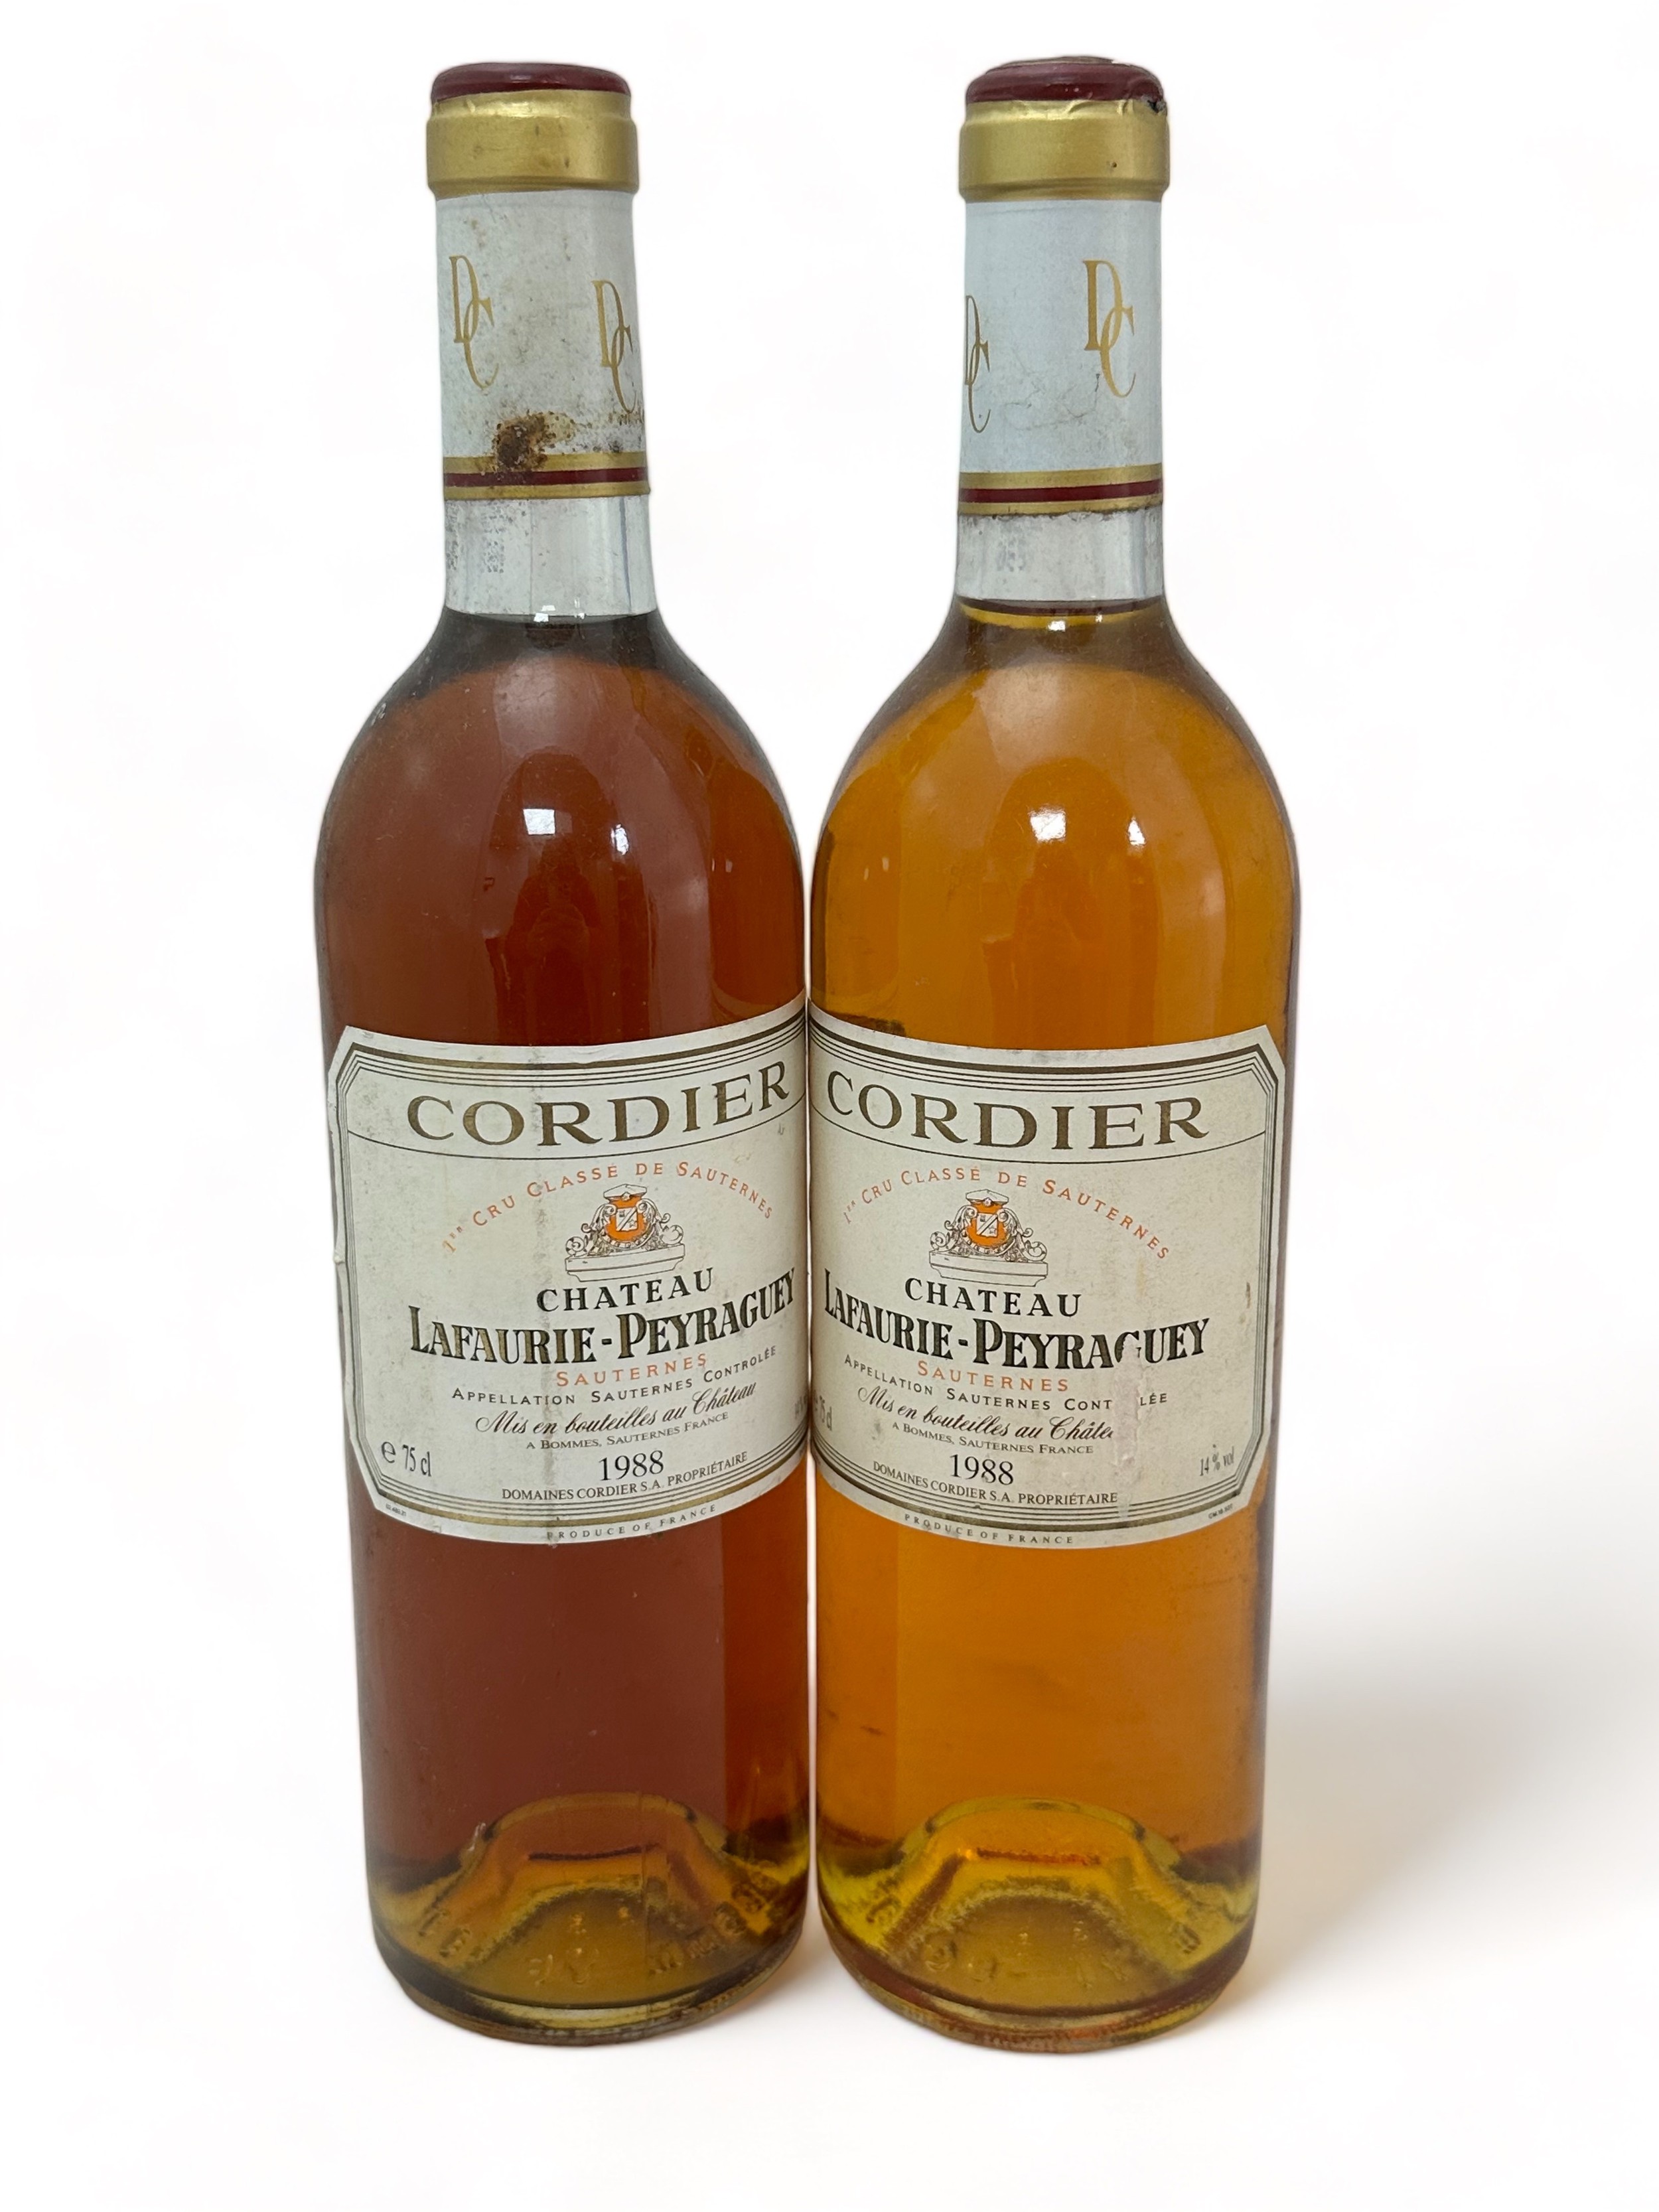 Two bottles of Chateau Lafaurie-Peyraguey Sauternes 1988, 2er cru classé. Damage to labels.